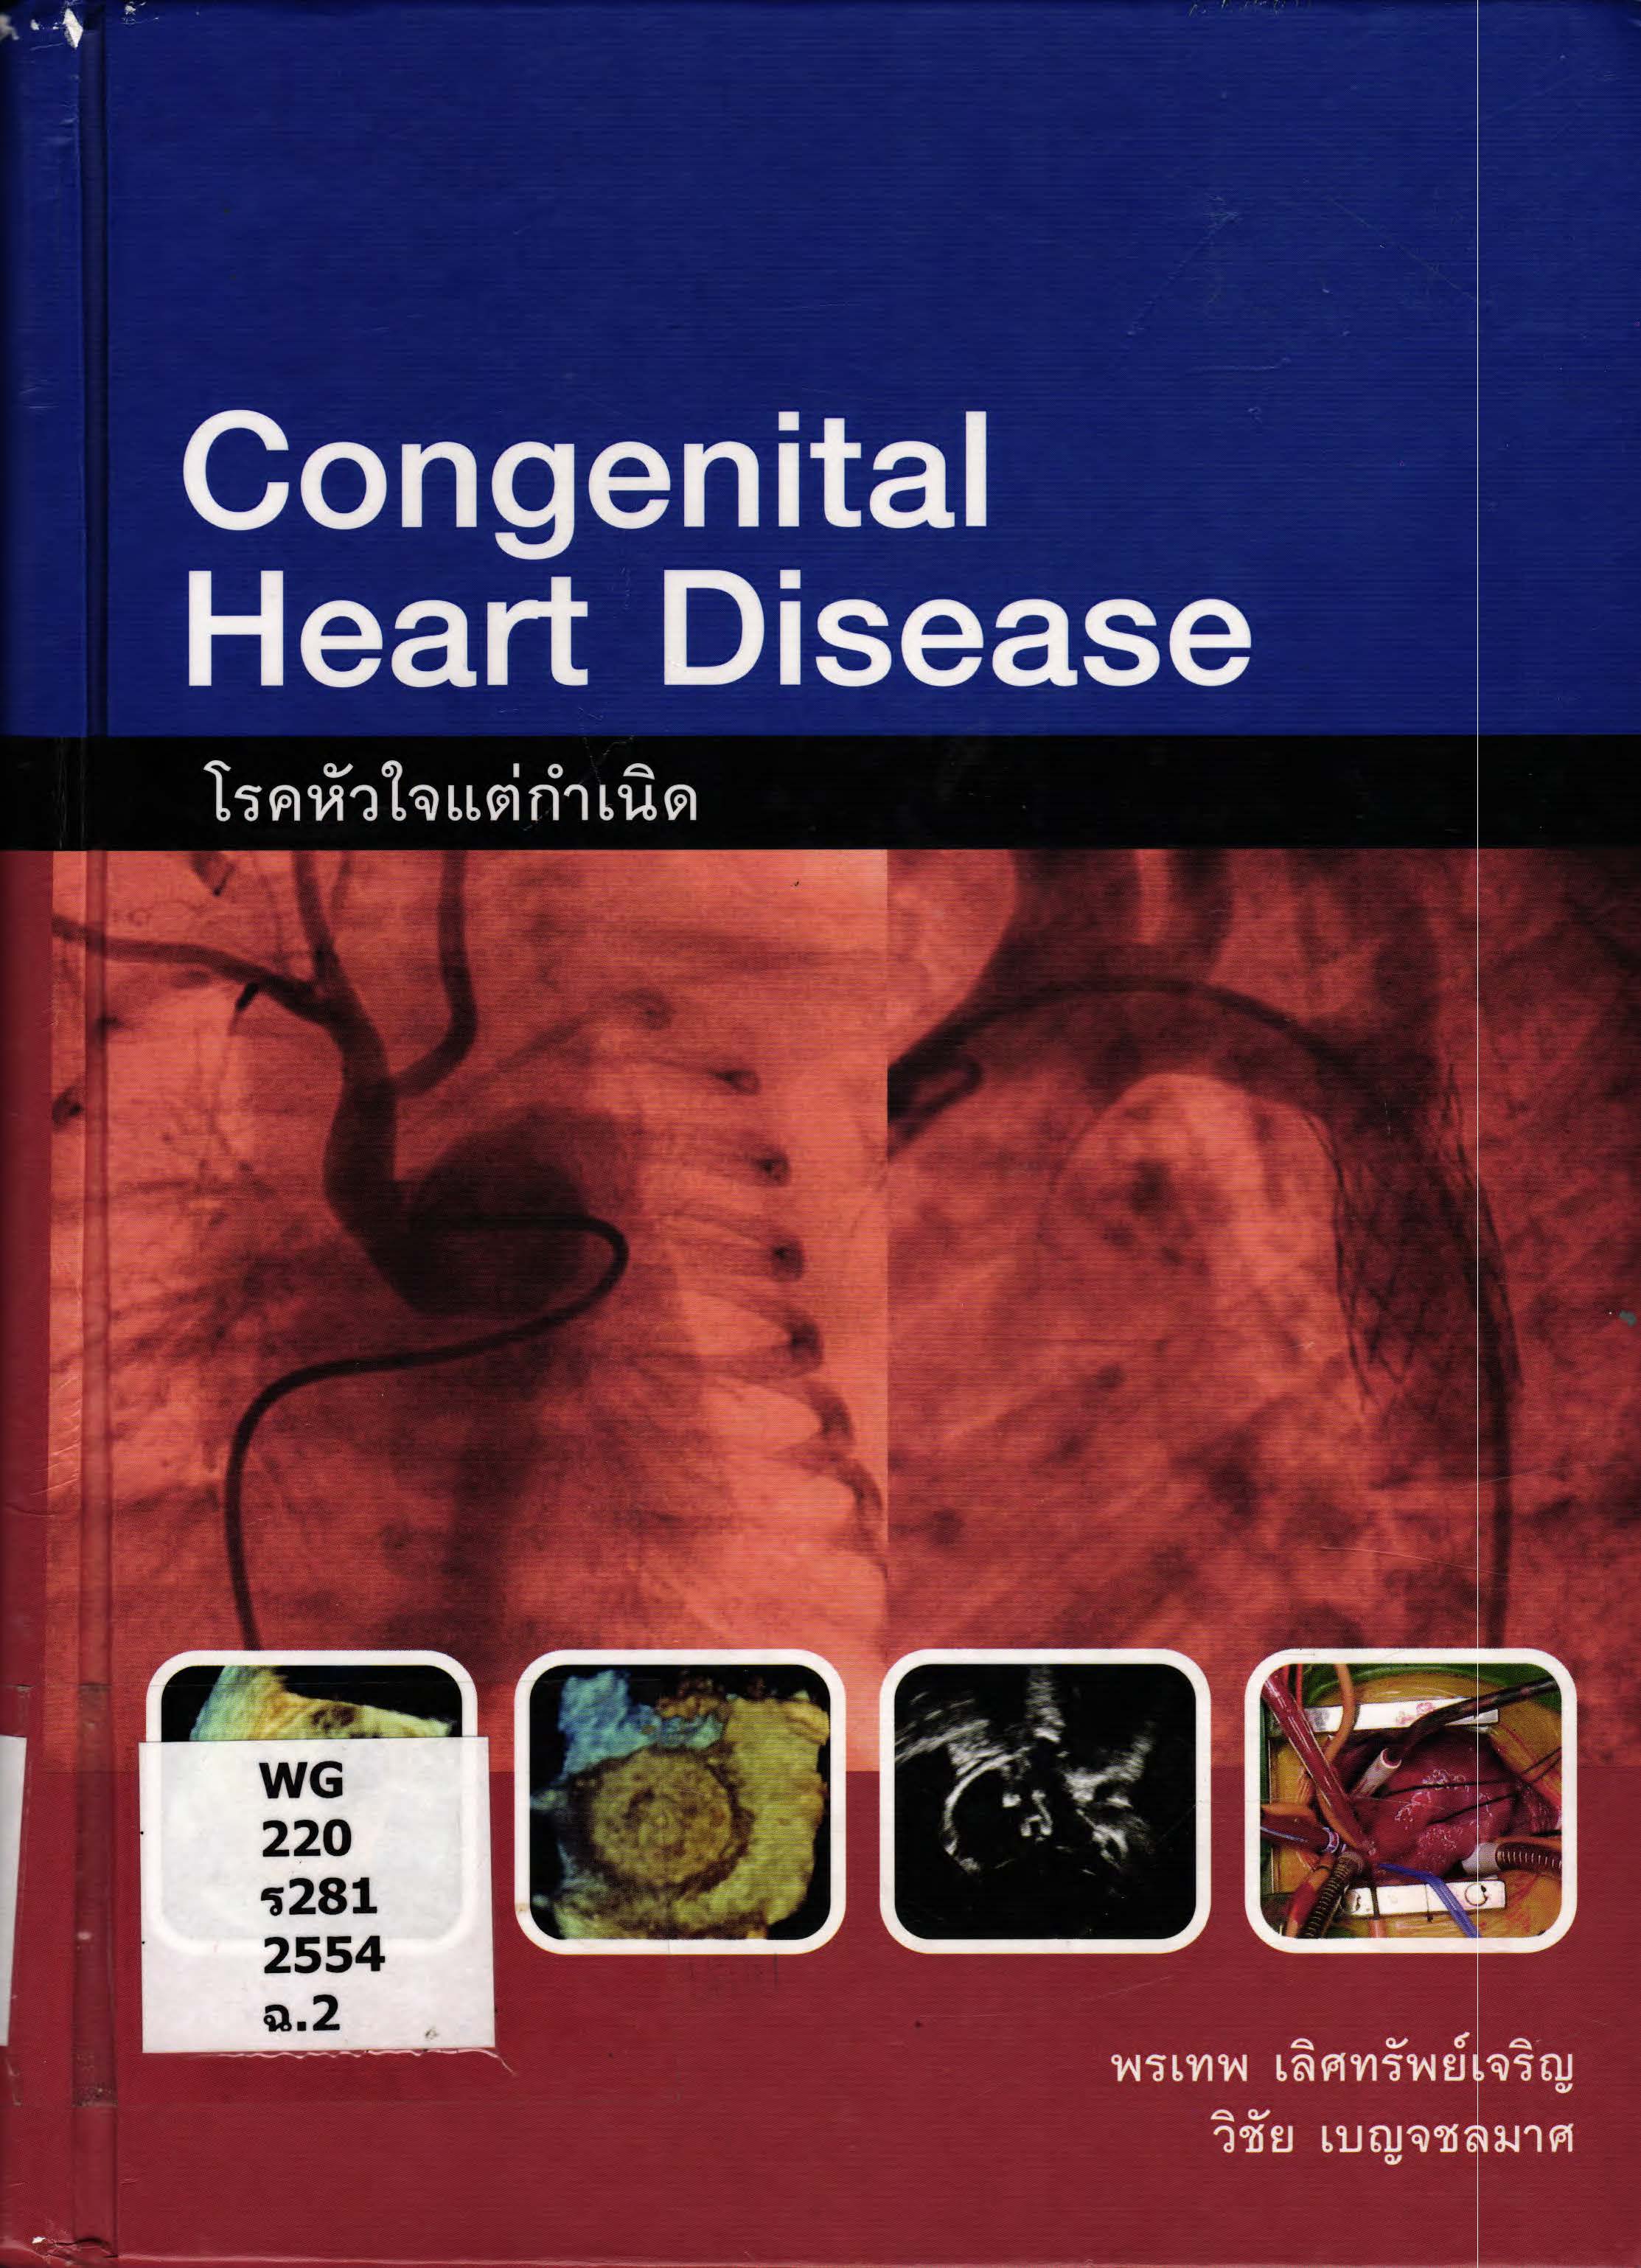 โรคหัวใจพิการแต่กำเนิด Congentinal heart diseases